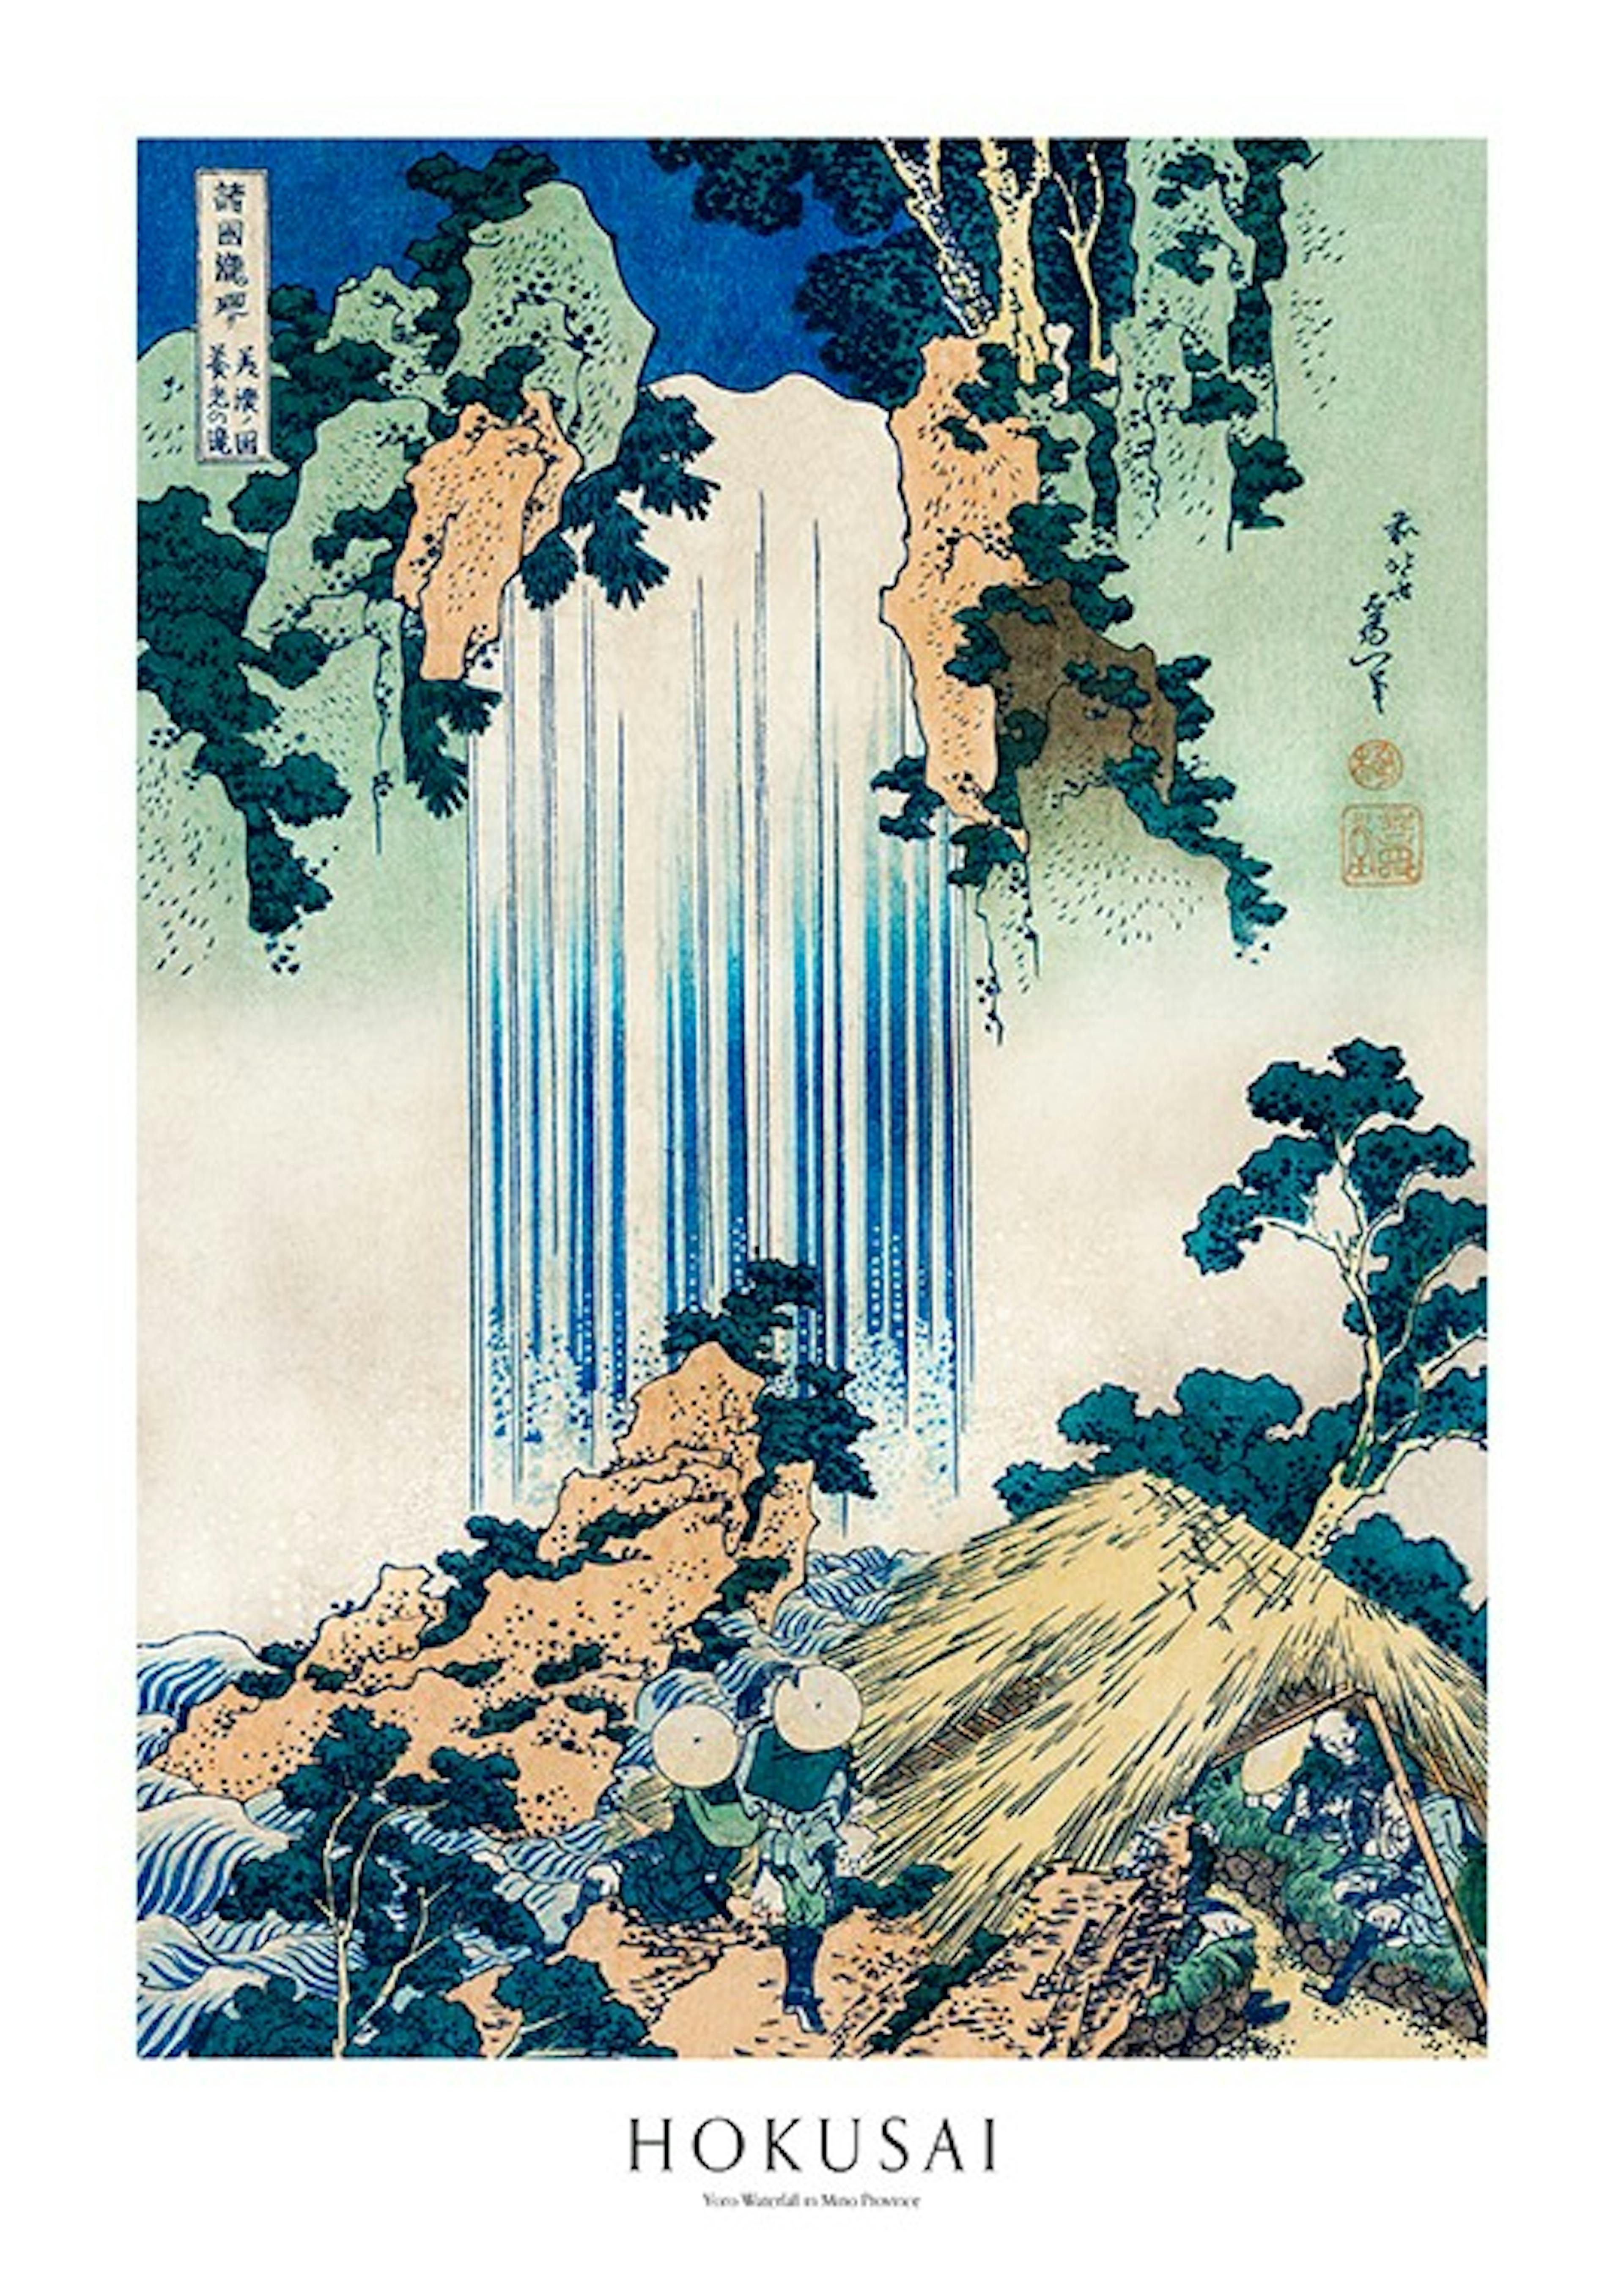 Hokusai - Yoro Waterfall in Mino Province Plakat 0